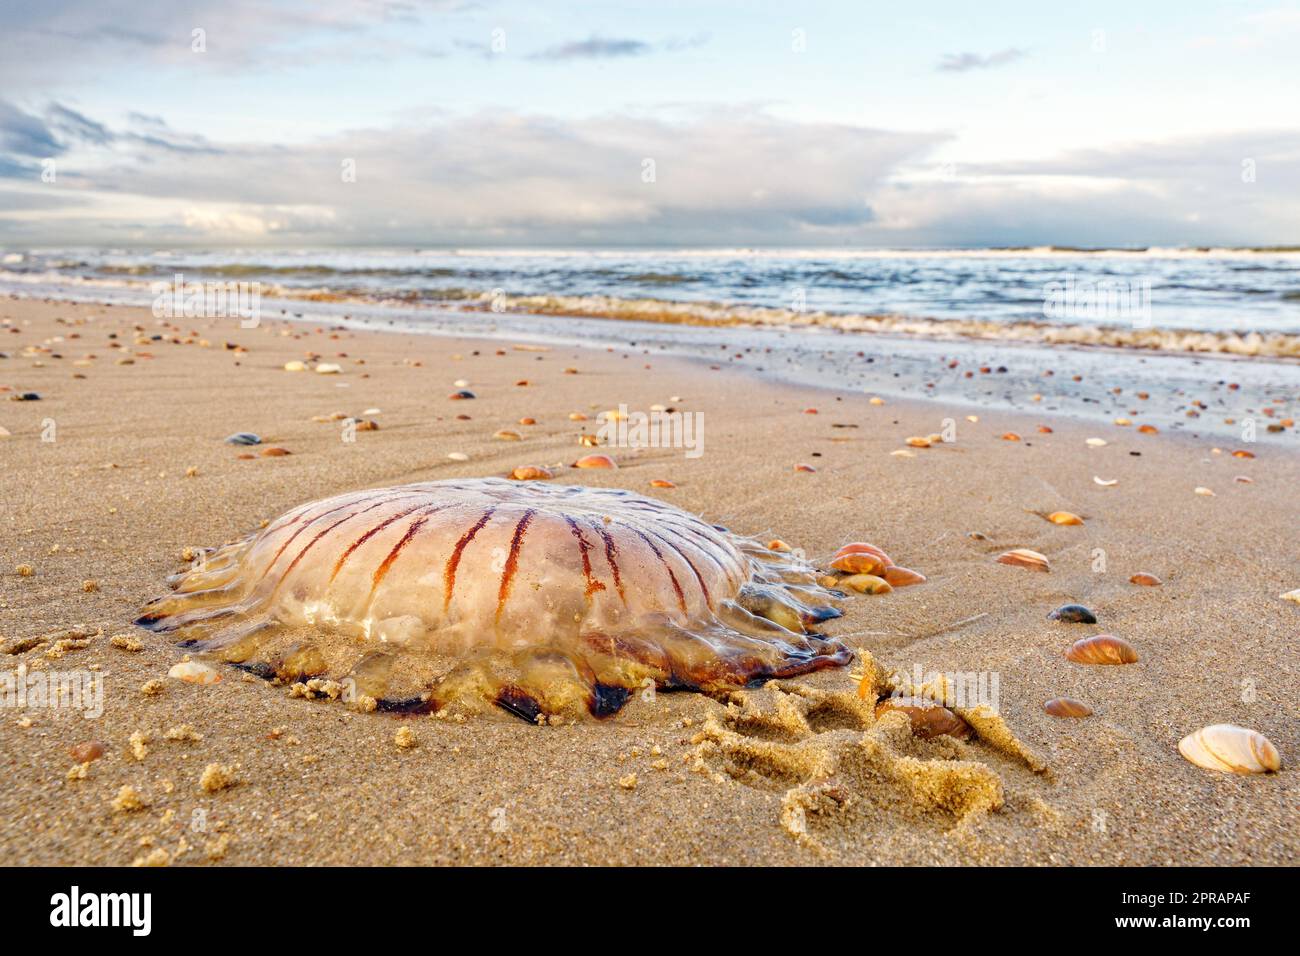 Eine Kompassqualle am Strand. North Holland Dune Reserve, Egmond aan Zee, Niederlande. Stockfoto